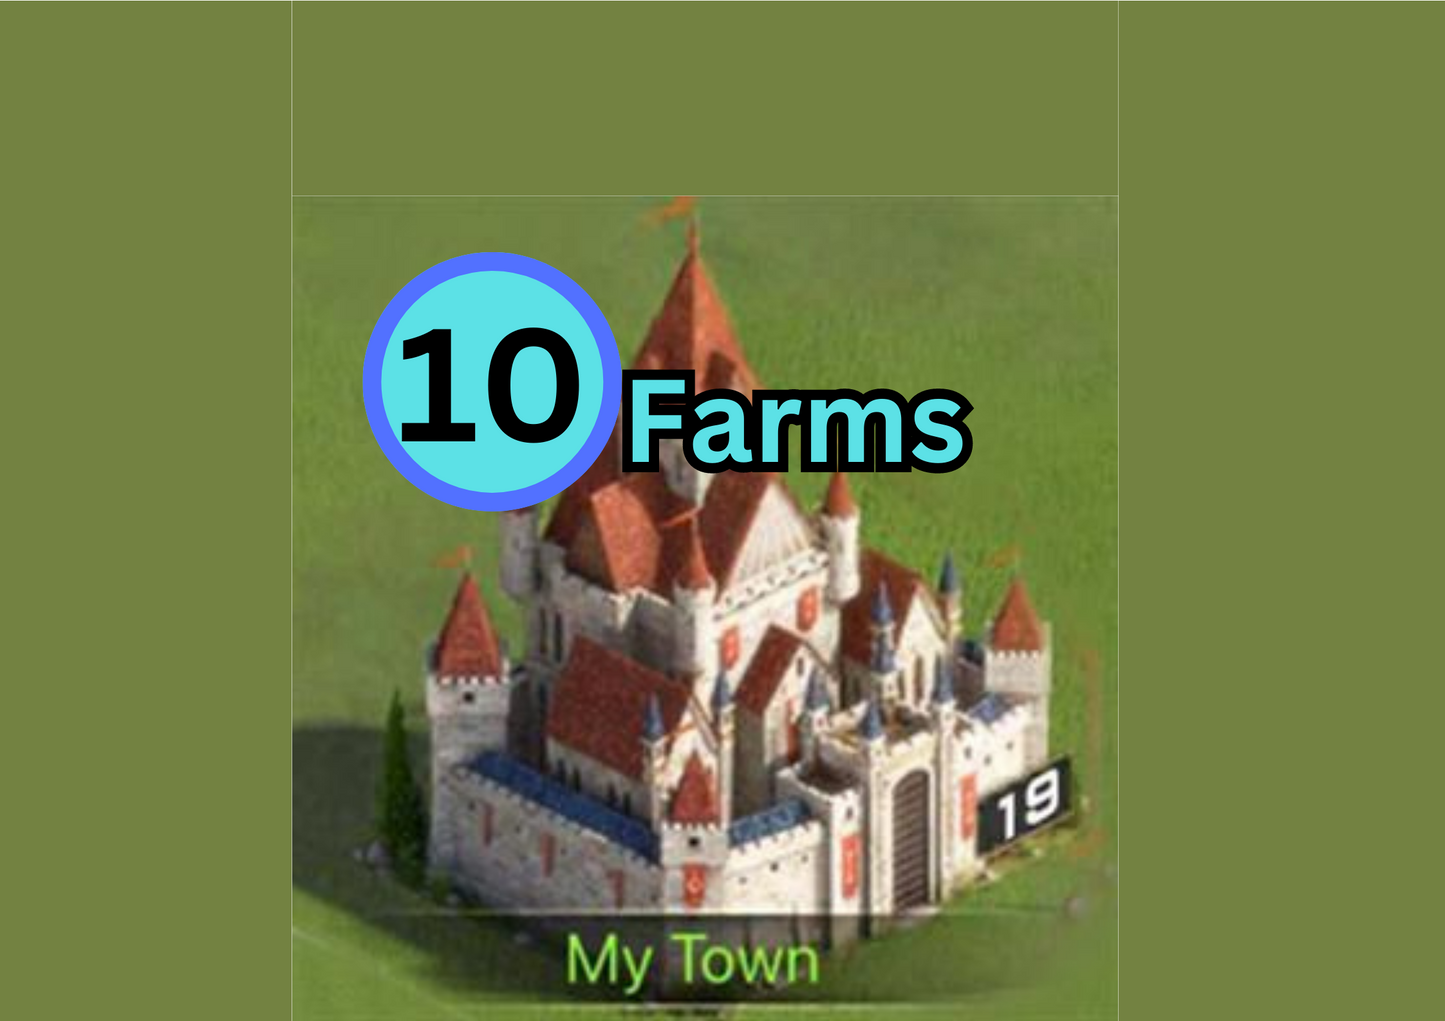 10 C19 Farms